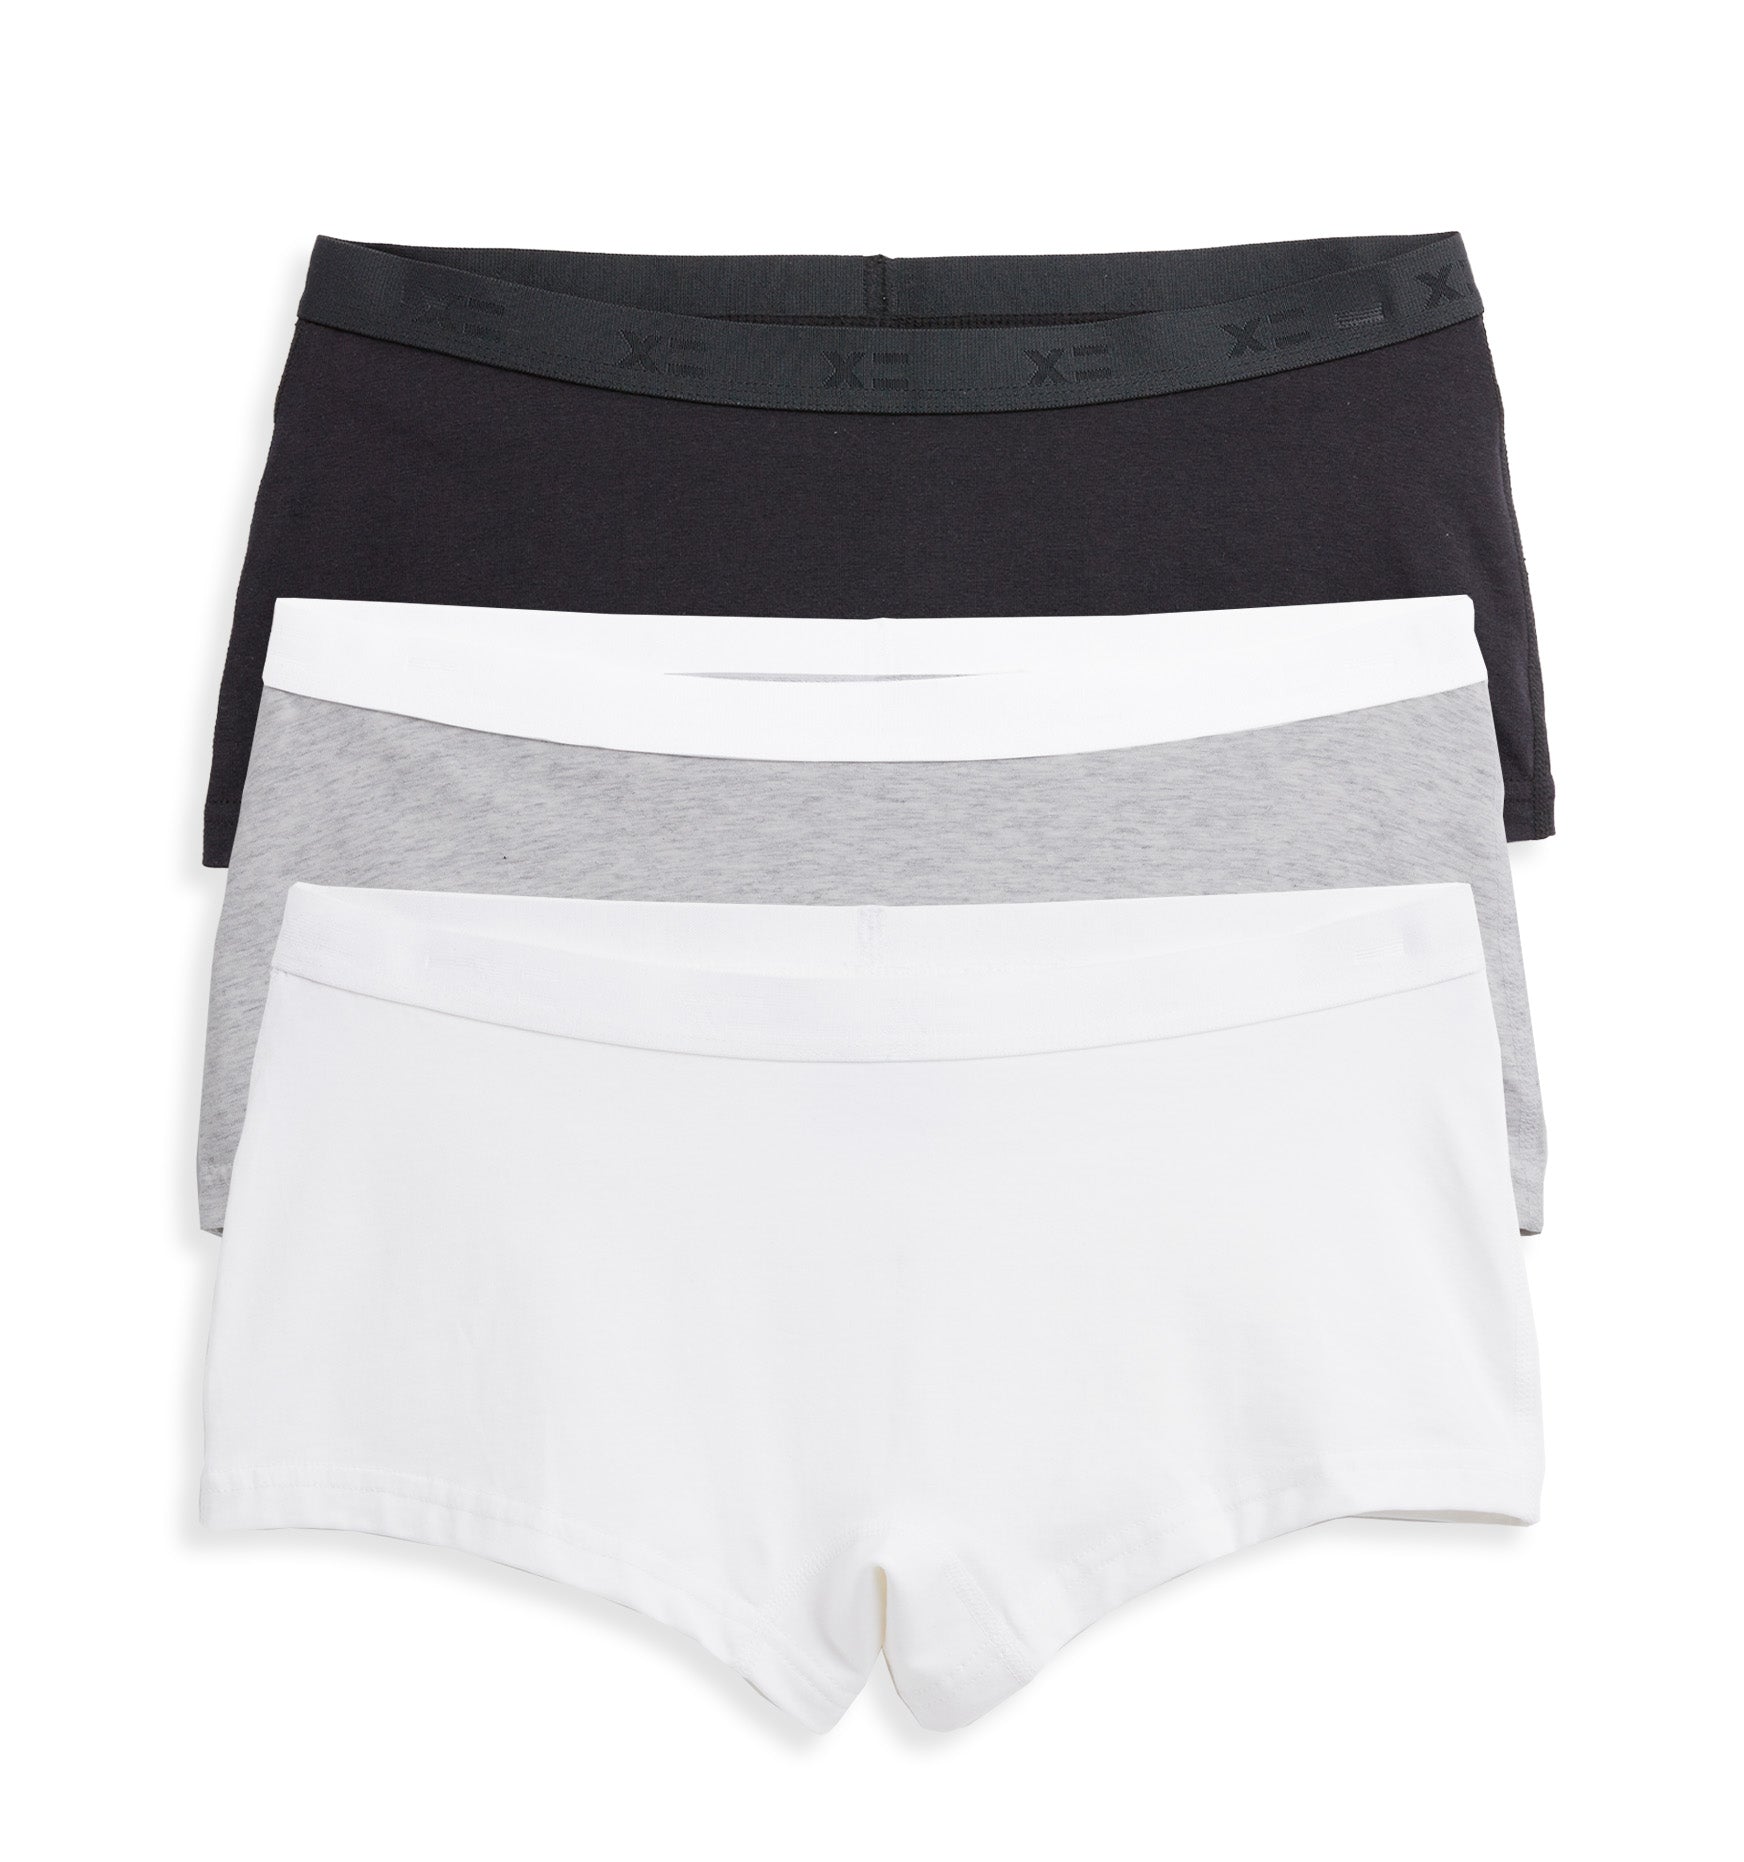 Calvin Klein Underwear White Cotton Boy Shorts Calvin Klein Underwear